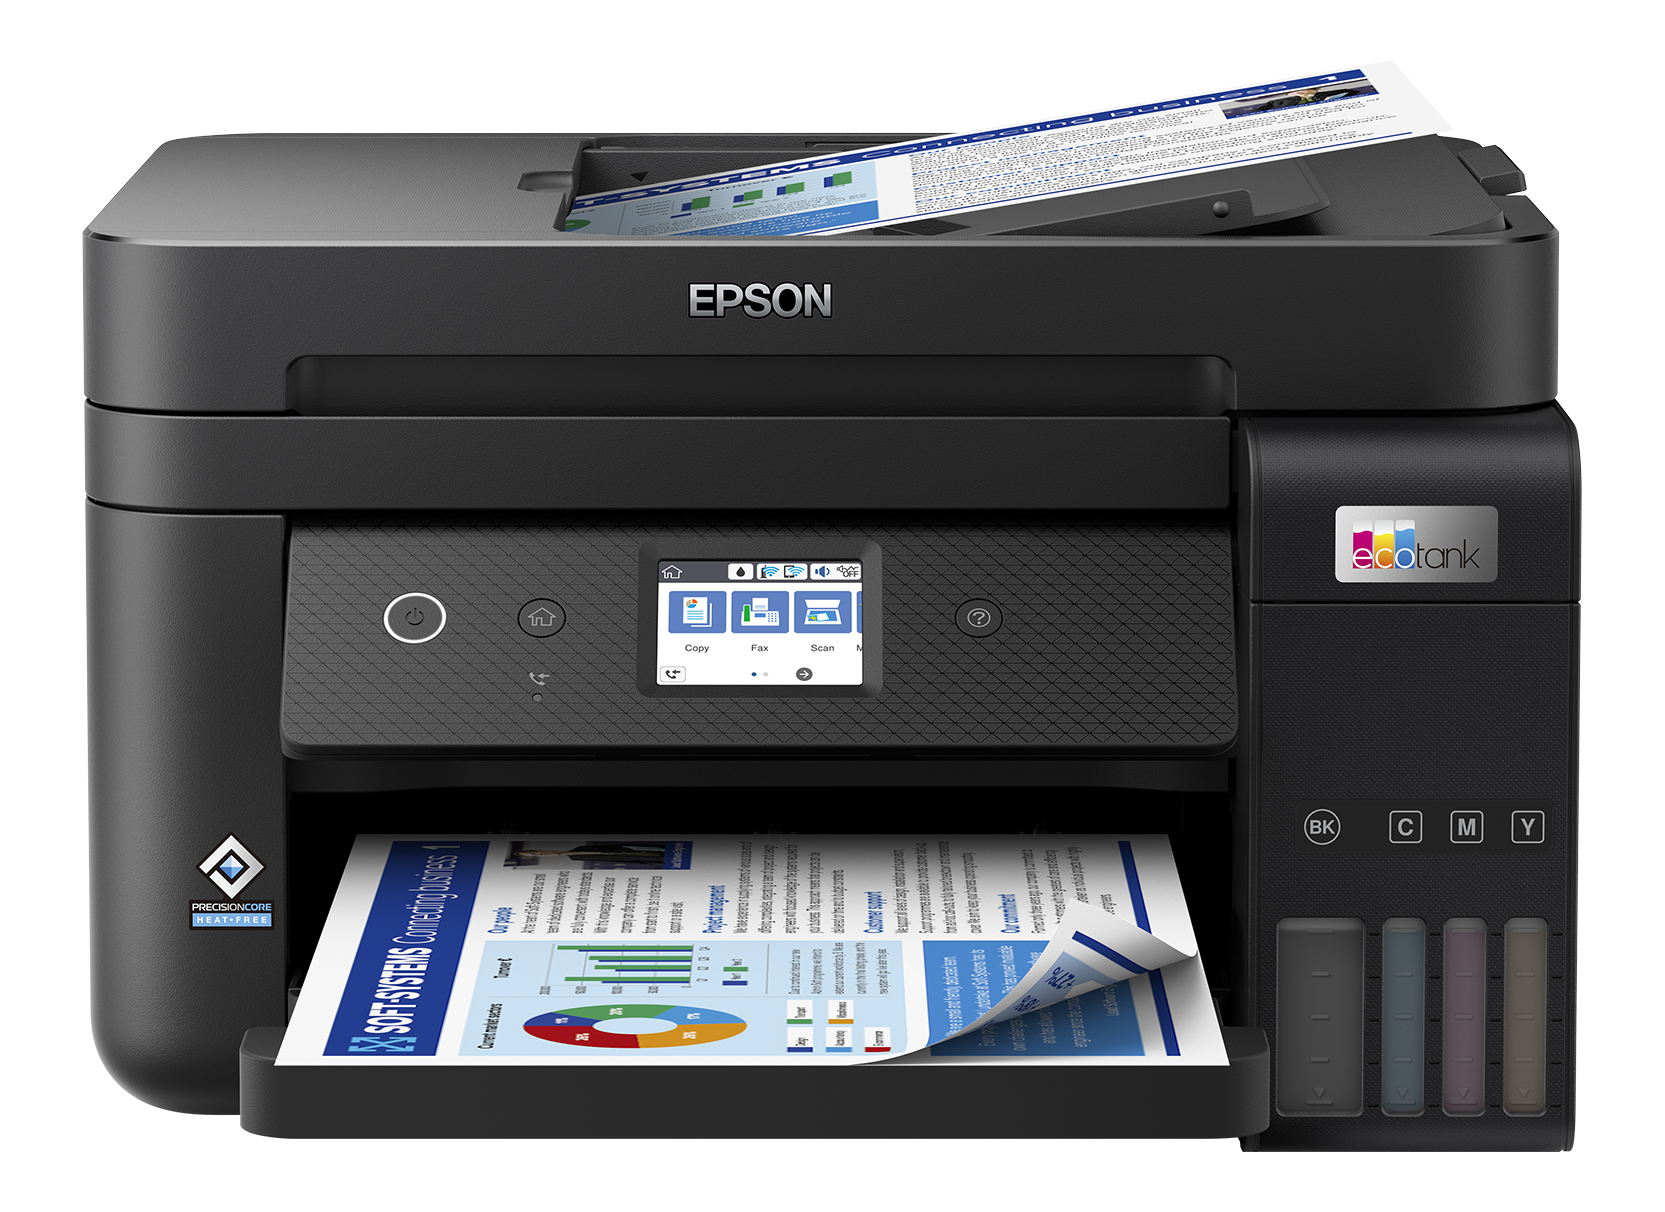 EPSON EcoTank ET-4850 - Tintentank-Multifunktionsdrucker